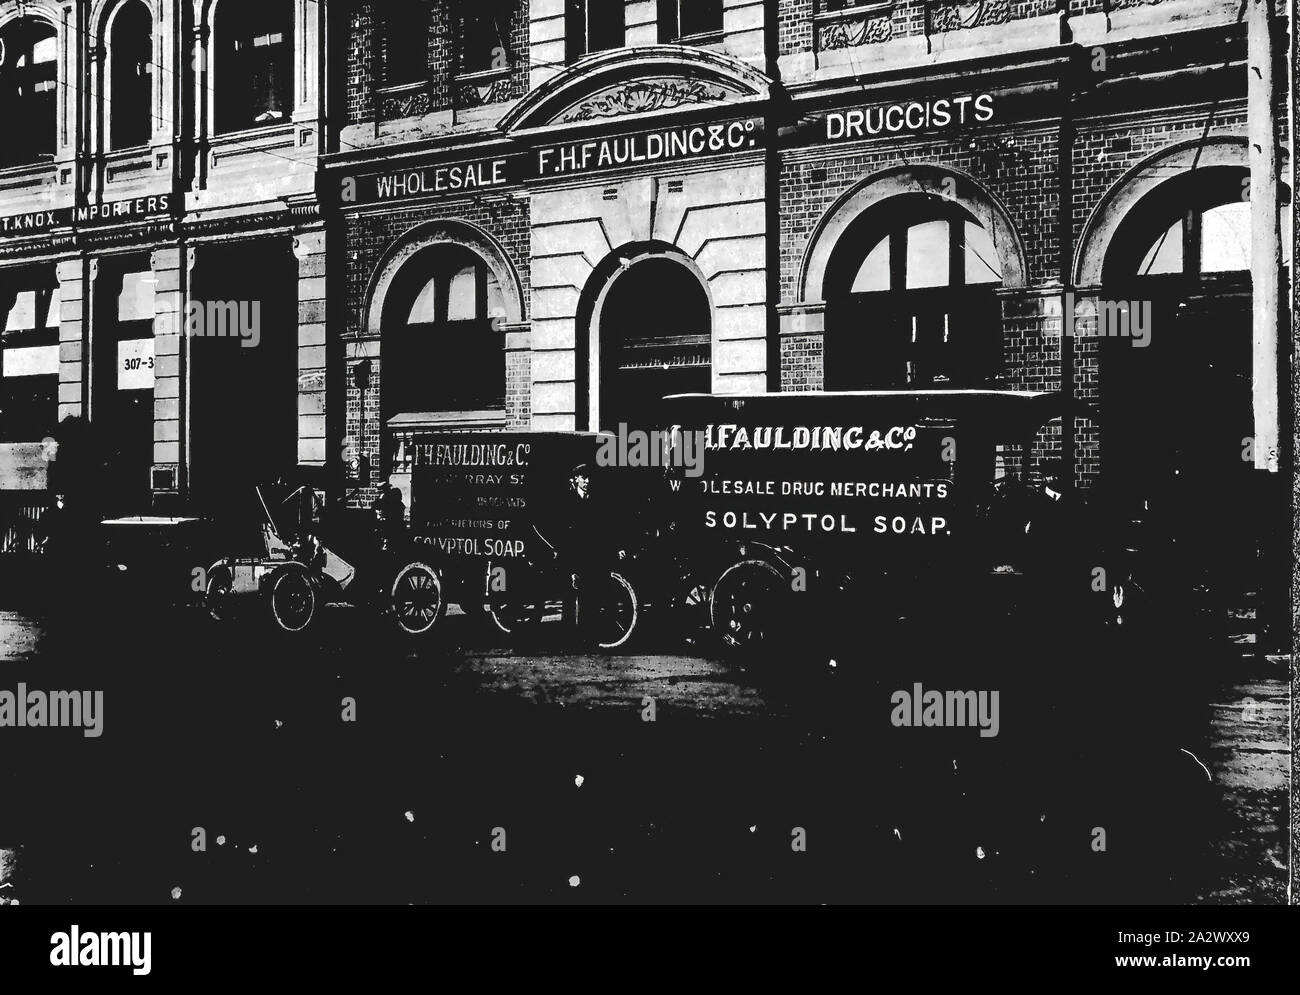 Négatif - Perth, Australie de l'Ouest, vers 1920, les fourgonnettes de livraison en face de l'entreprise de F.H. Spaulding, droguistes en gros Banque D'Images